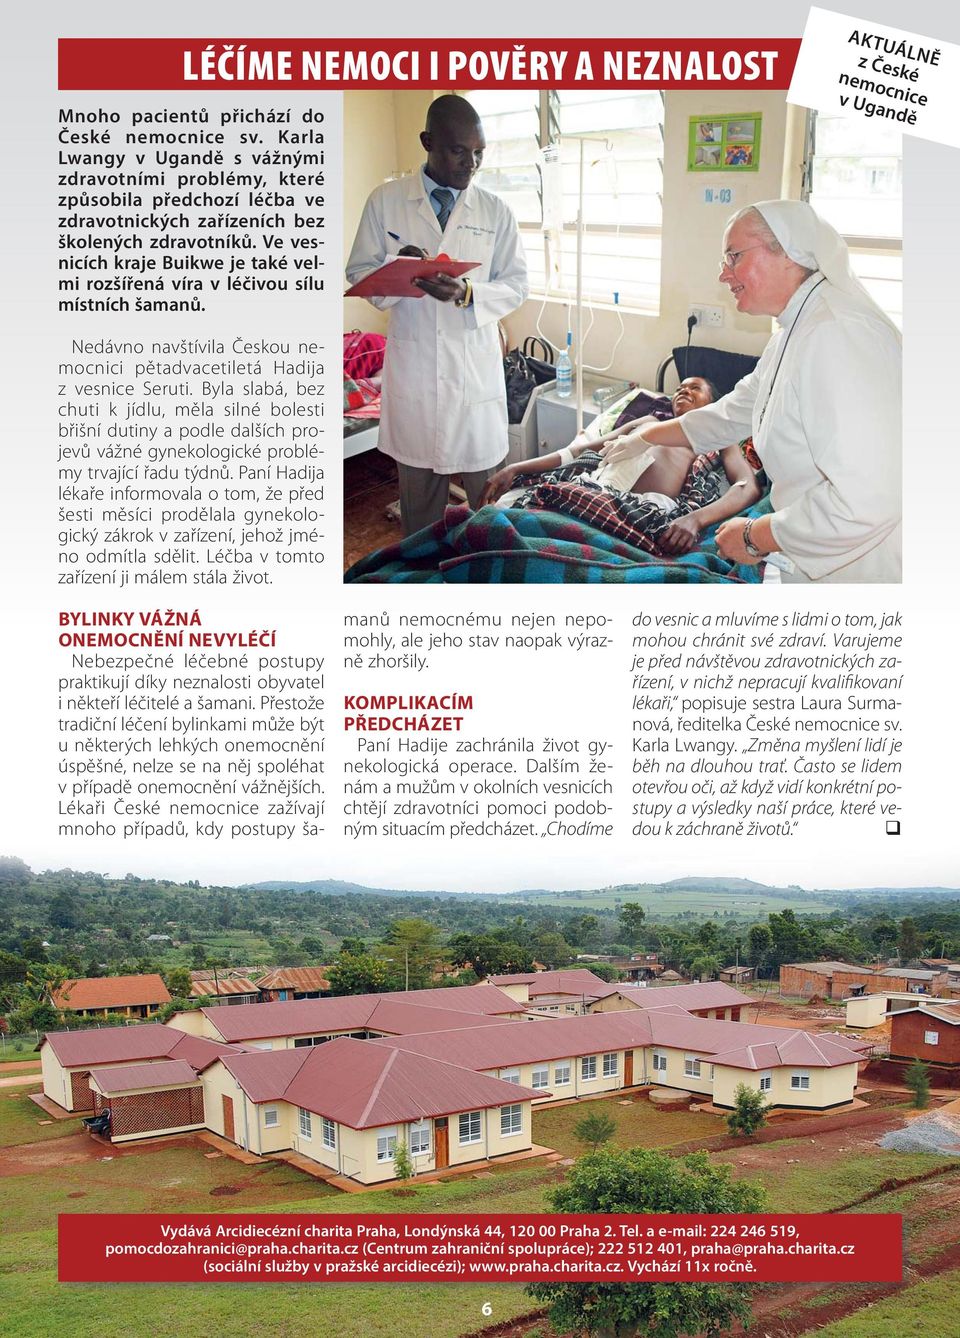 Ve vesnicích kraje Buikwe je také velmi rozšířená víra v léčivou sílu místních šamanů. AKTUÁLNĚ z České nemocnice v Ugandě Nedávno navštívila Českou nemocnici pětadvacetiletá Hadija z vesnice Seruti.